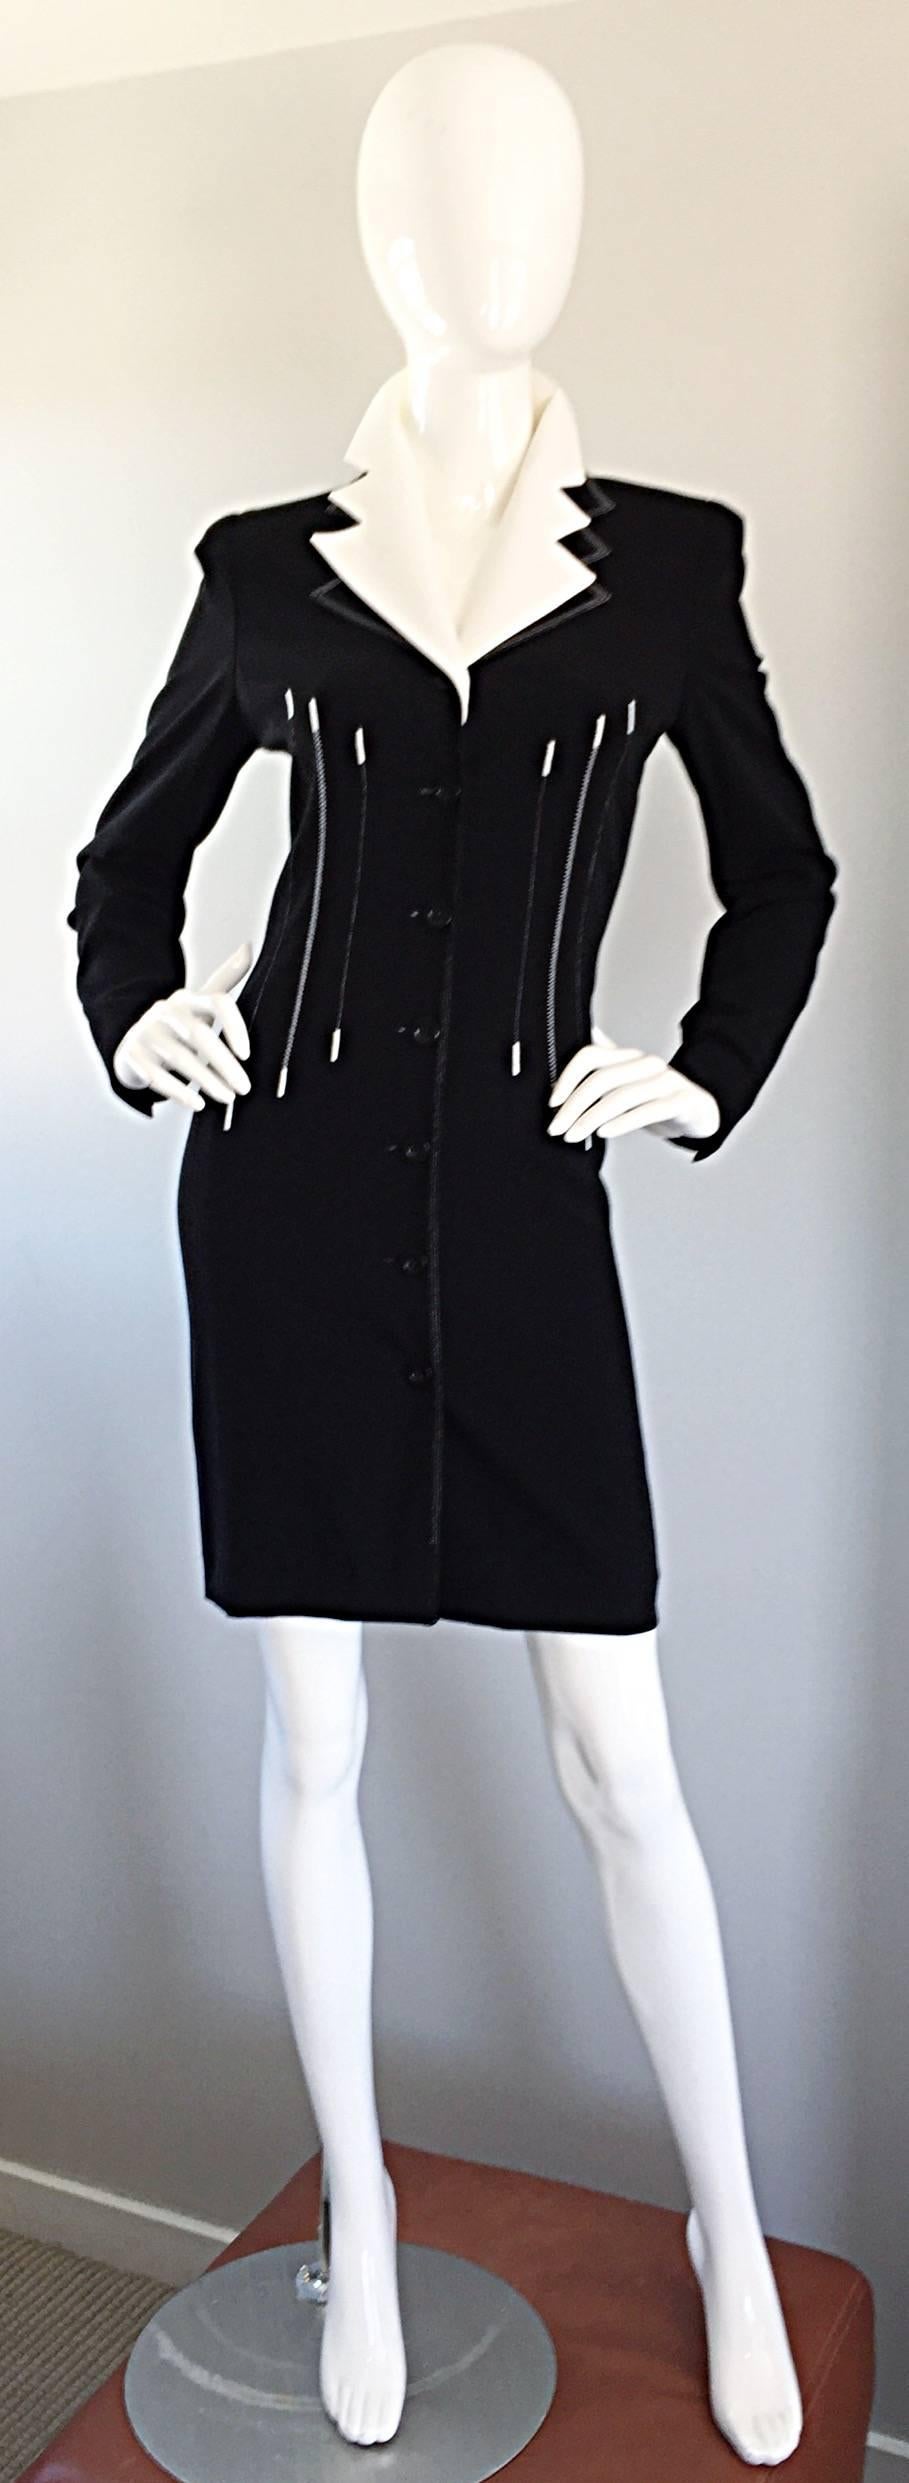 Außergewöhnliches, schwarz-weißes ESCADA by MARGARETHA LEY Kleid oder Jacke mit abnehmbarem Kragen! Schwarzes Bodycon-Kleid mit durchgehender weißer Stickerei. Avantgarde-Stil mit abnehmbarem Kragen. Umarmt den Körper an den richtigen Stellen. Kann